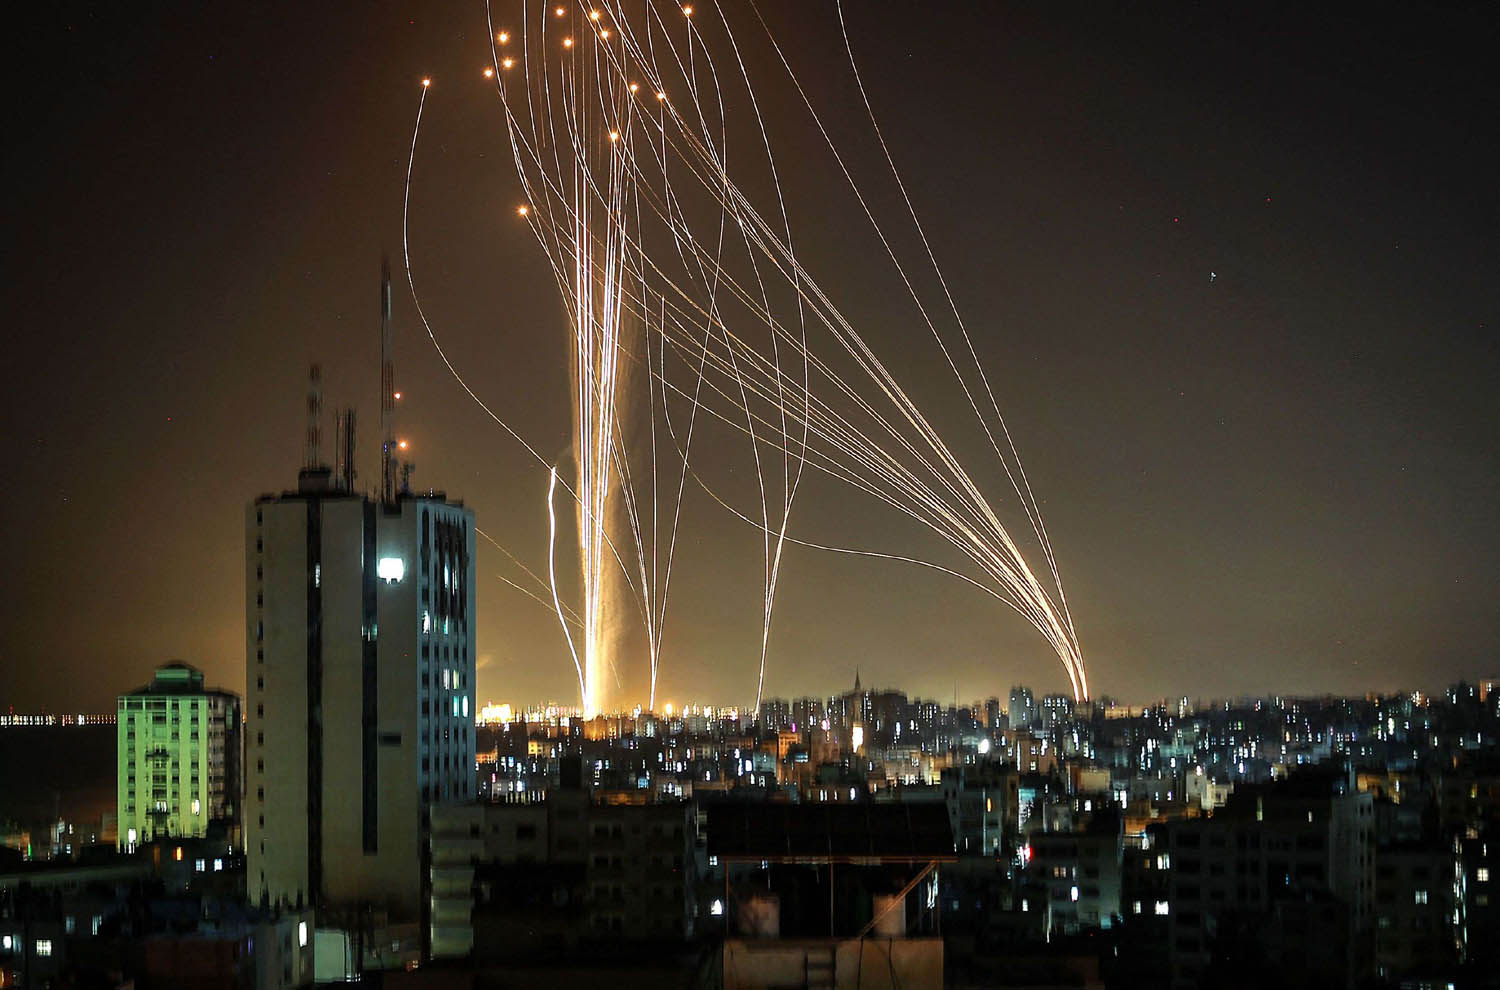 صواريخ تطلقها حماس من غزة صوب إسرائيل